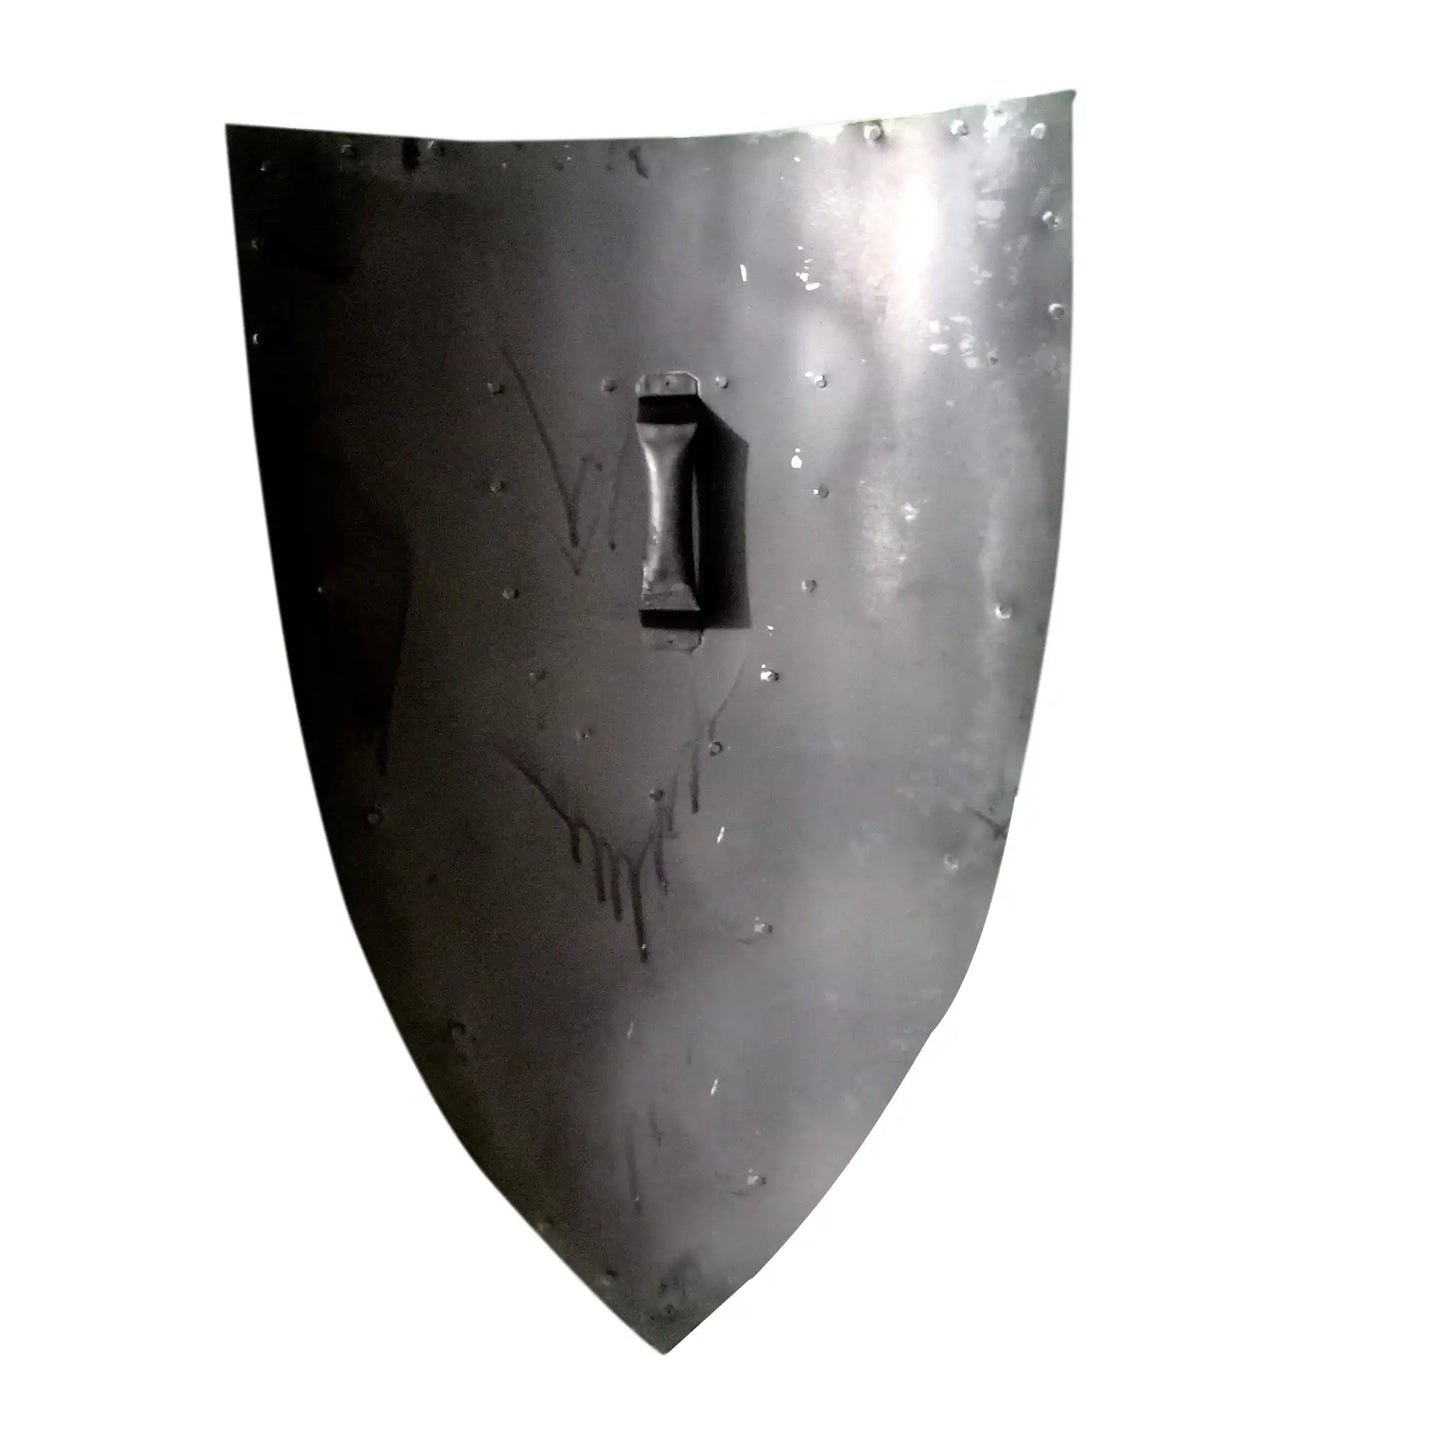 Medieval Cross Crusader Templar Knight Shield